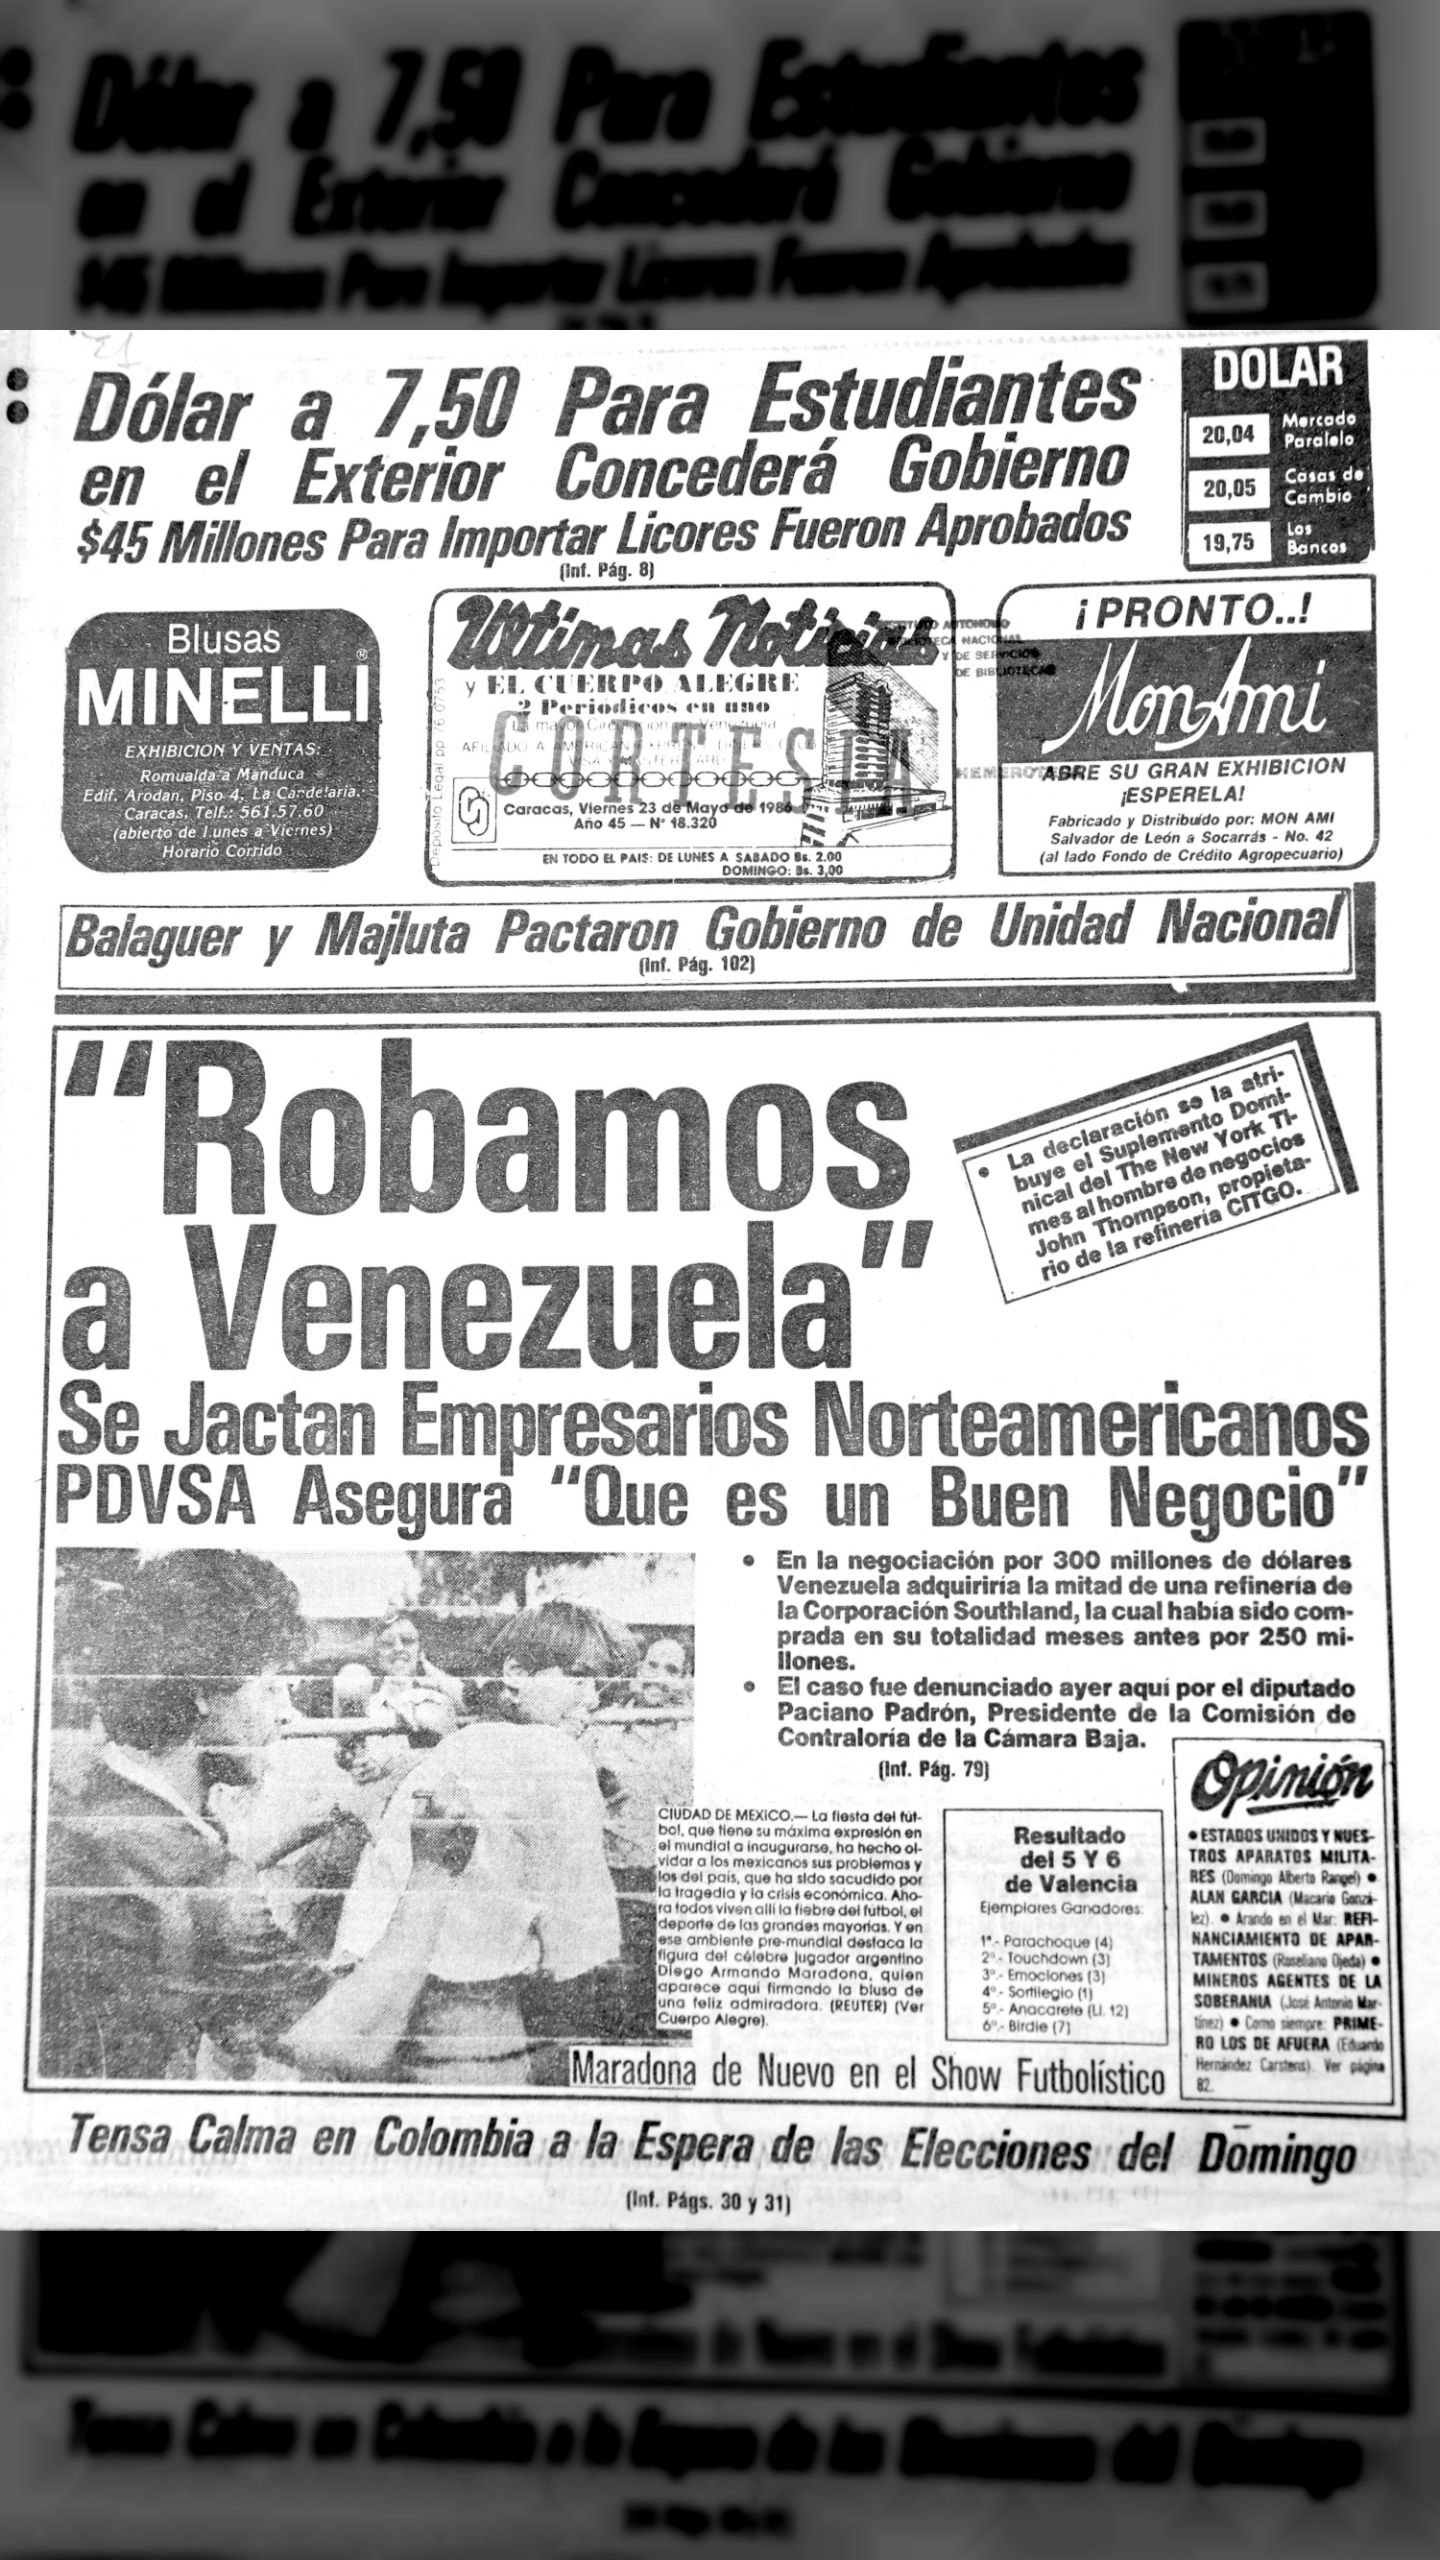 ROBAMOS A VENEZUELA (Últimas Noticias, 23 de Mayo de 1986)